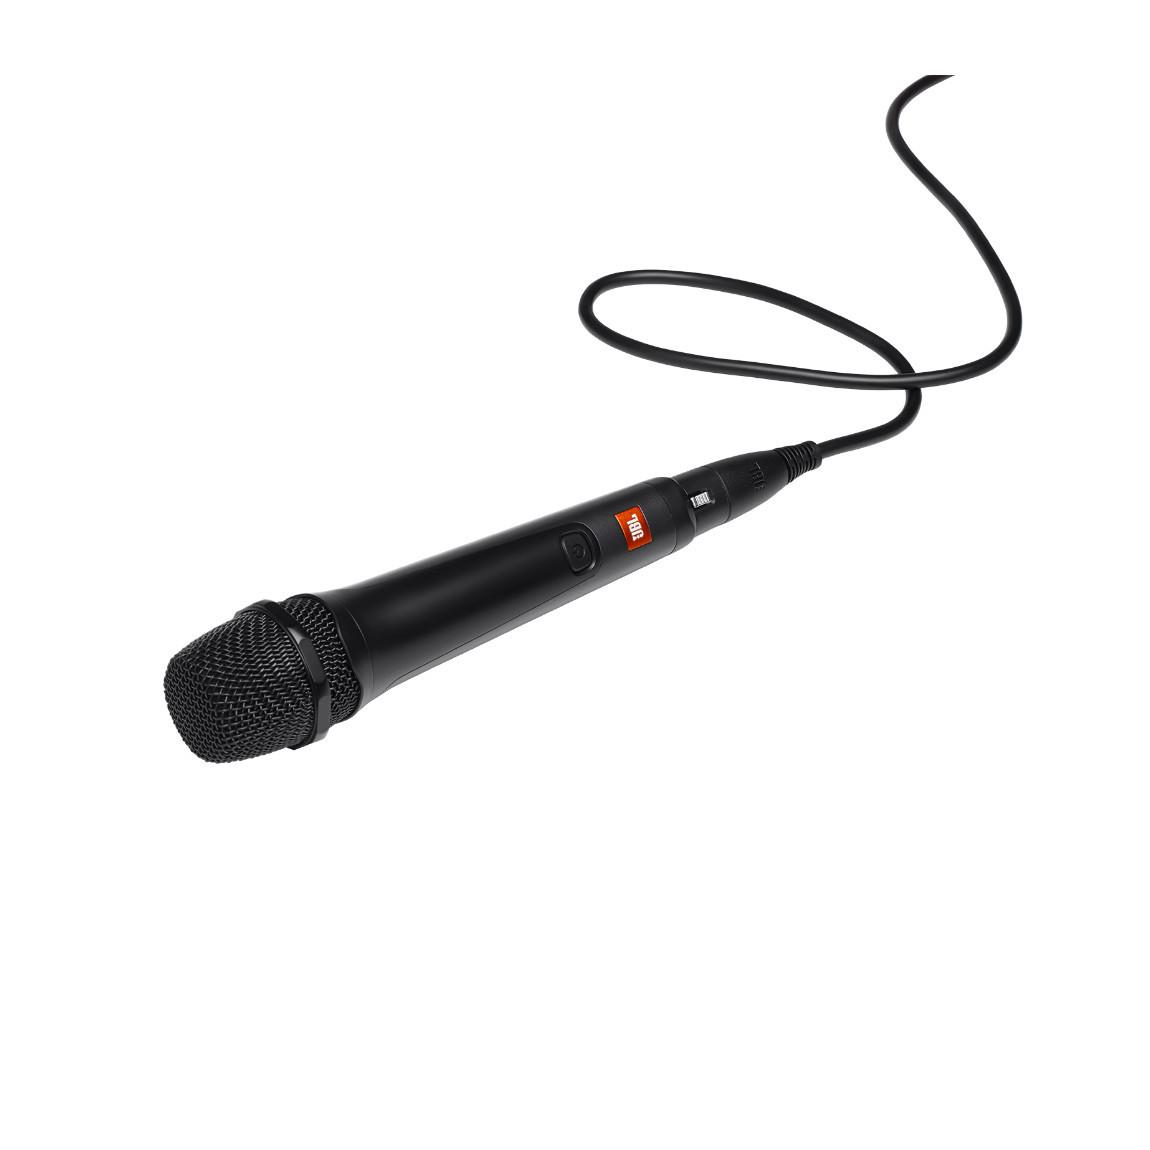 JBL Mikrofon für Partybox, 4,5m Kabel_schraeg mit Kabel